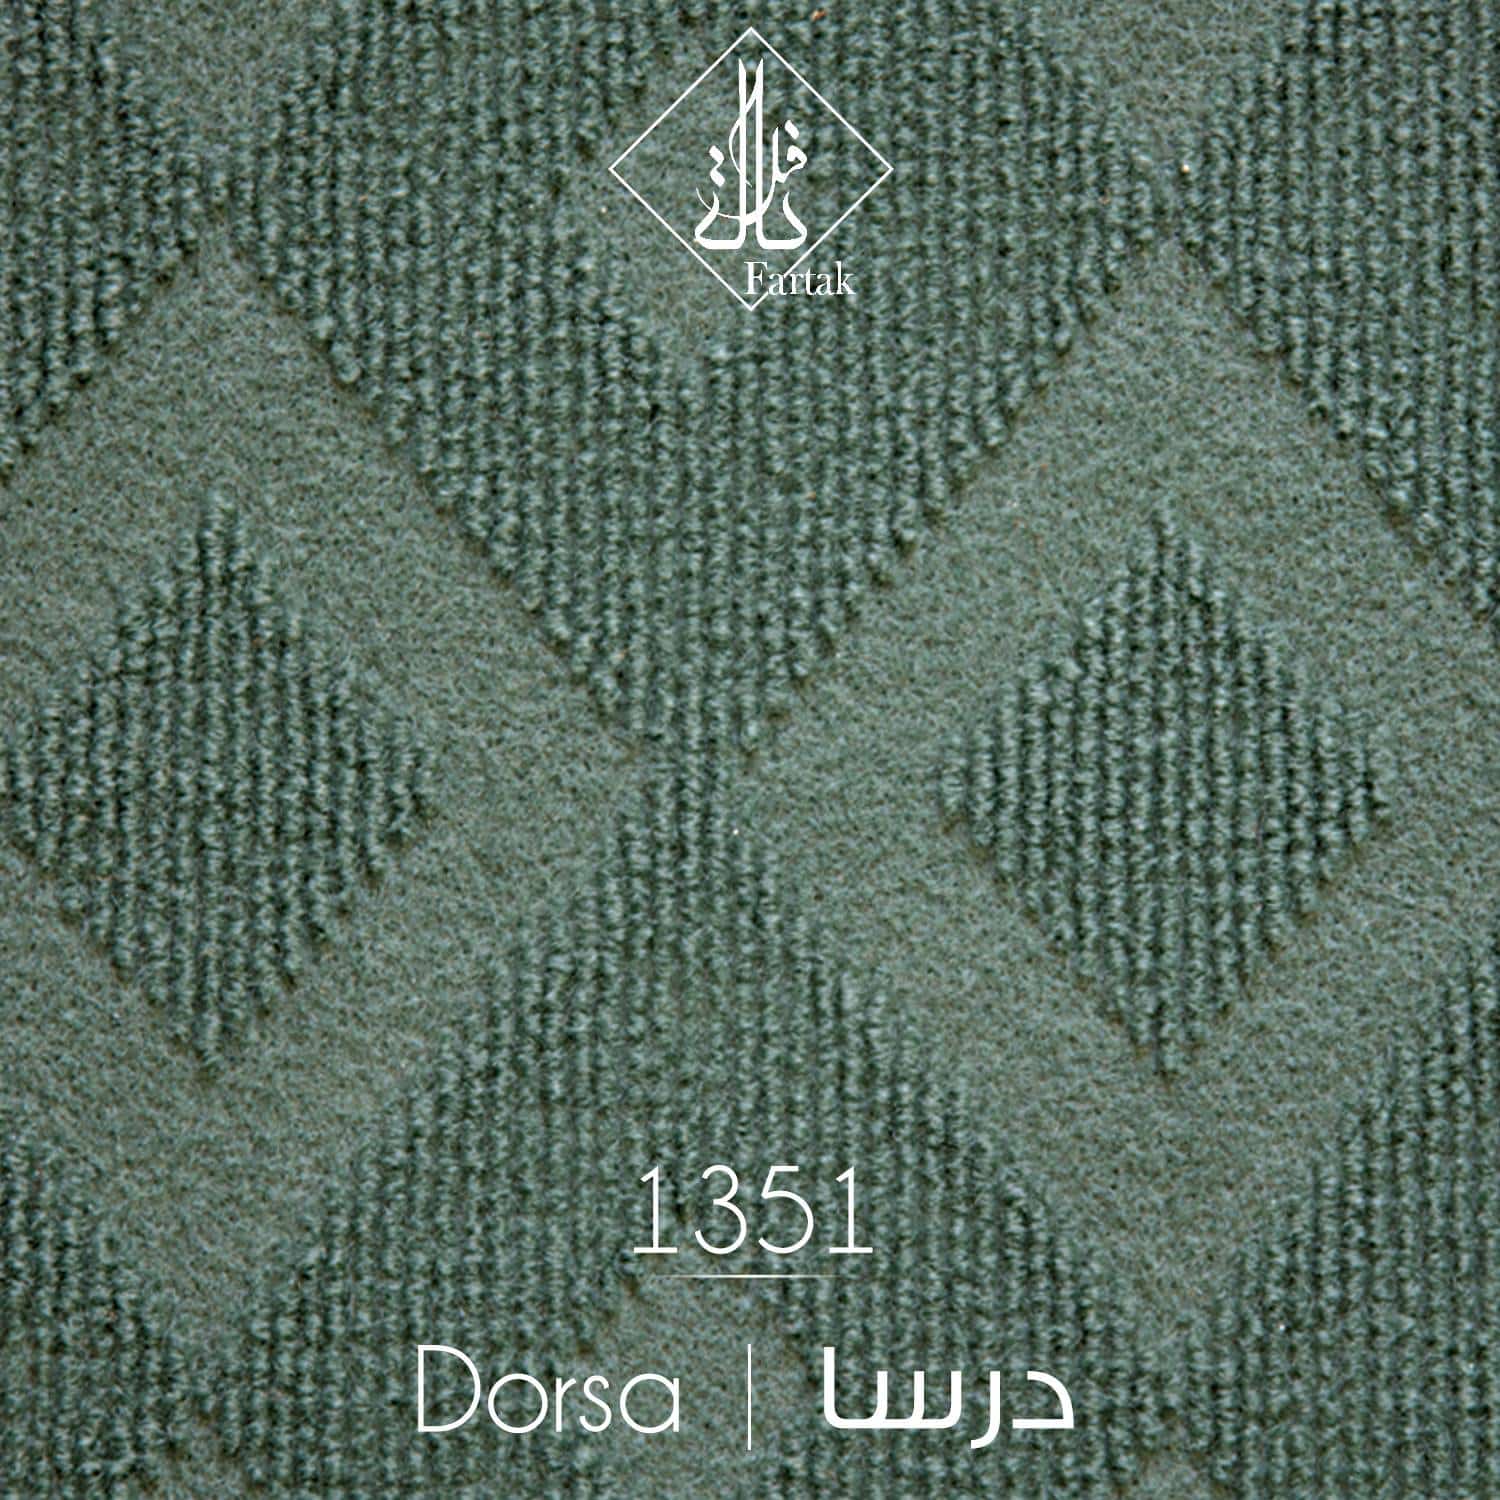 موکت ظریف مصور طرح درسا کد 1351